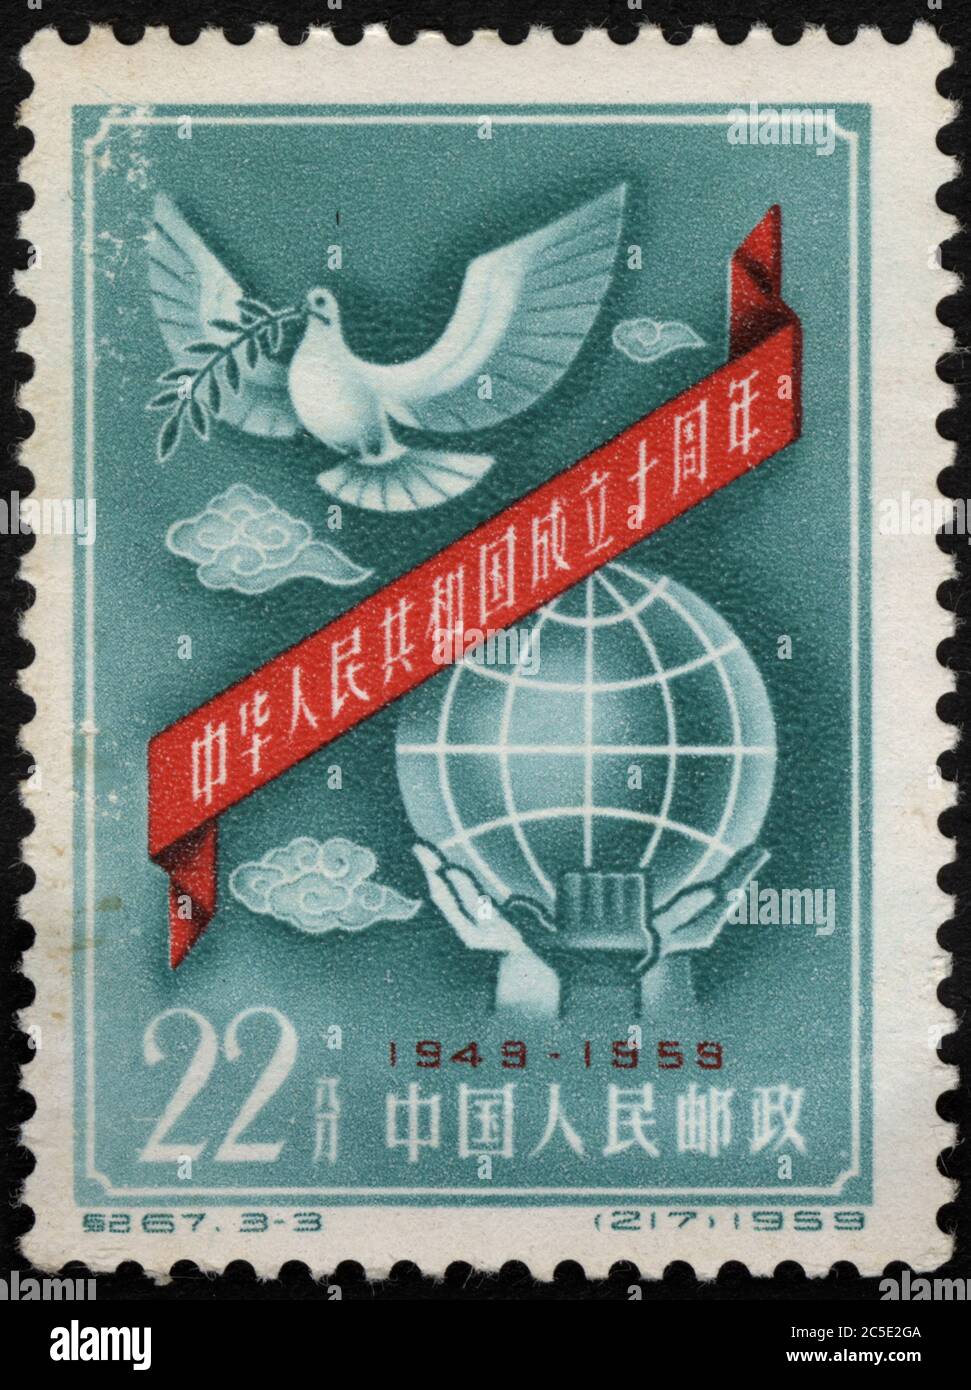 Fete du 10e anniversaire de la Republique Populaire de Chine, avec Symbole de la colombe de la Paix et de la planete. Timbre, Poste de Chine, 1959. Stockfoto